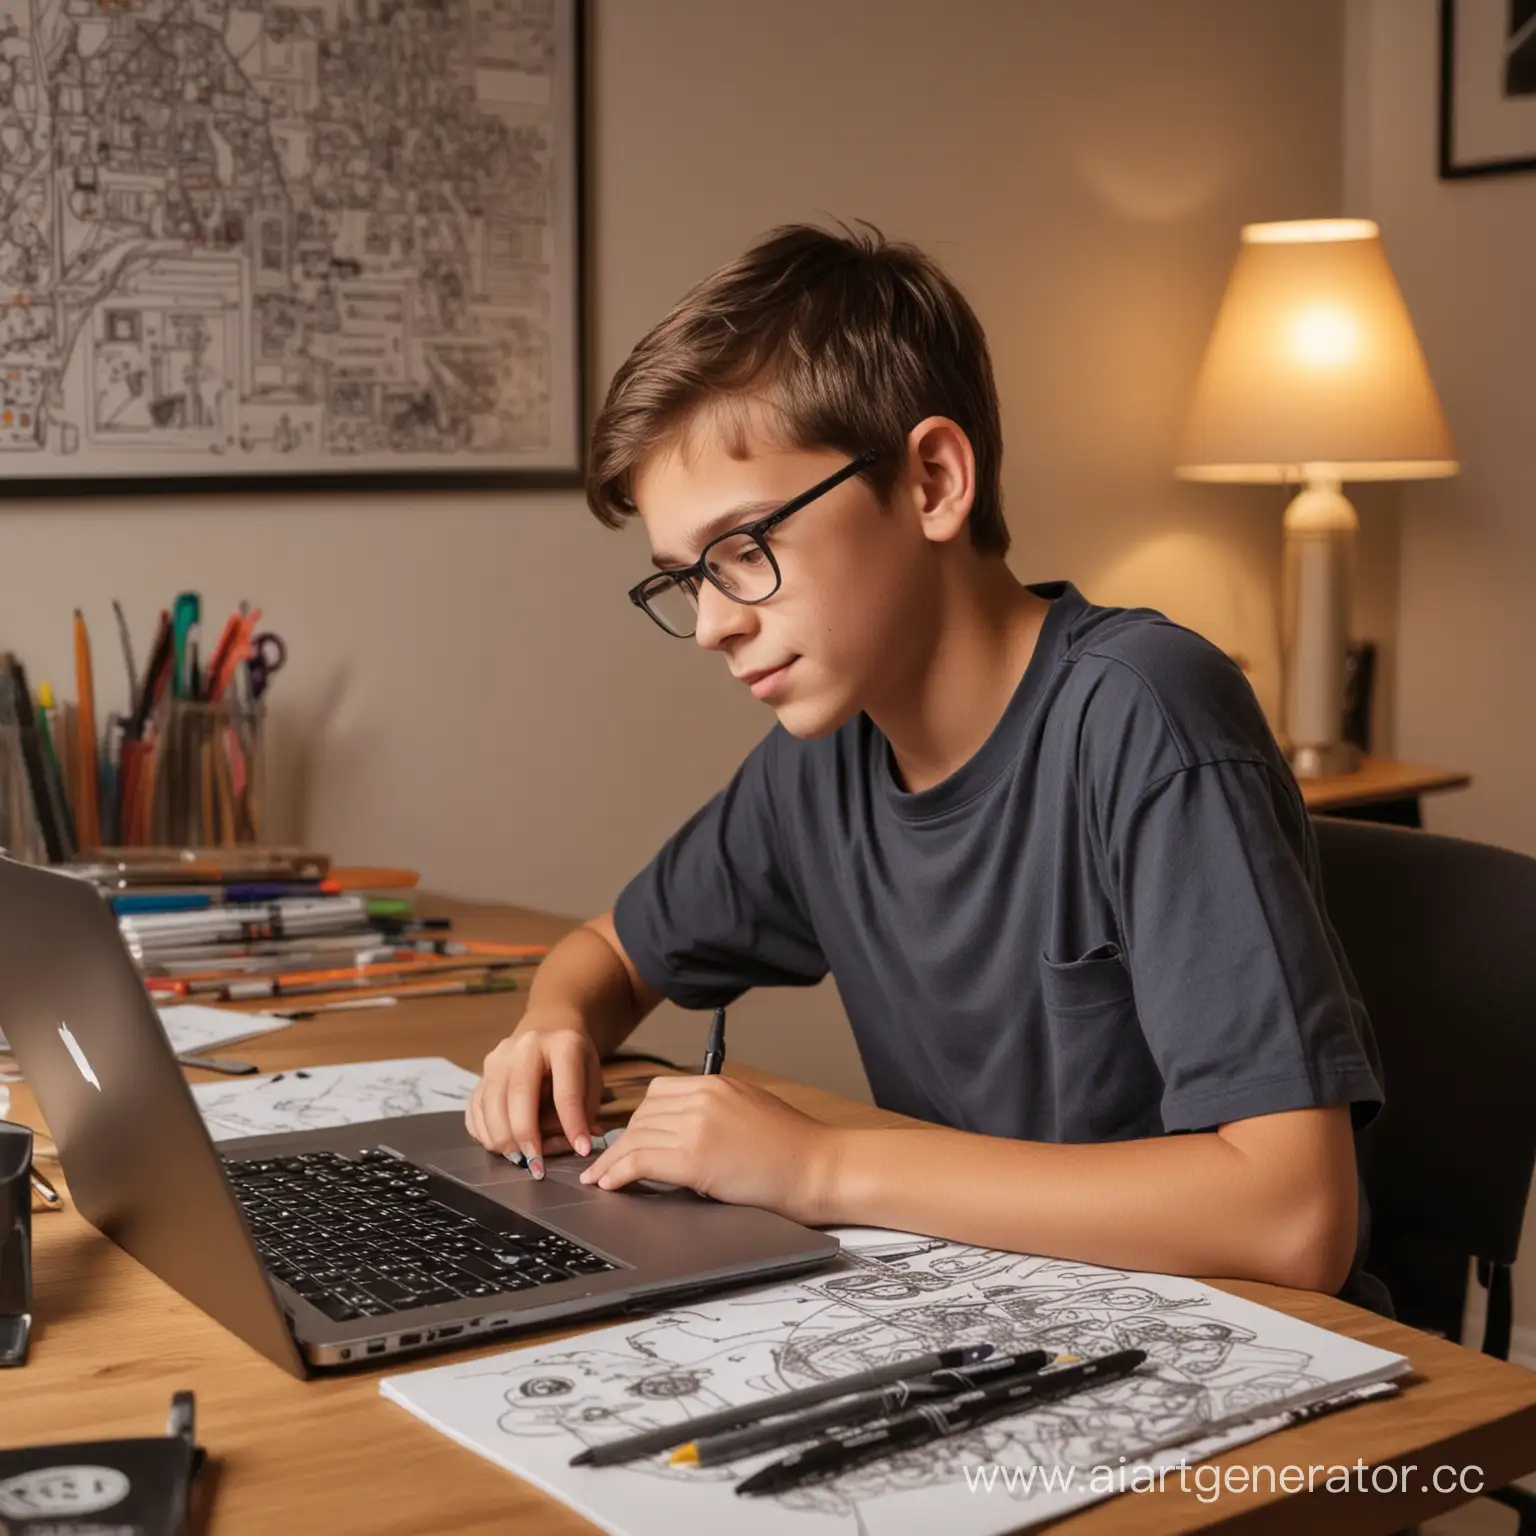 Мальчик 12 лет занимается за ноутбуком дома за рабочим столом, на котором находятся рисунки и карандаши с маркерами, в доме с уютным светом